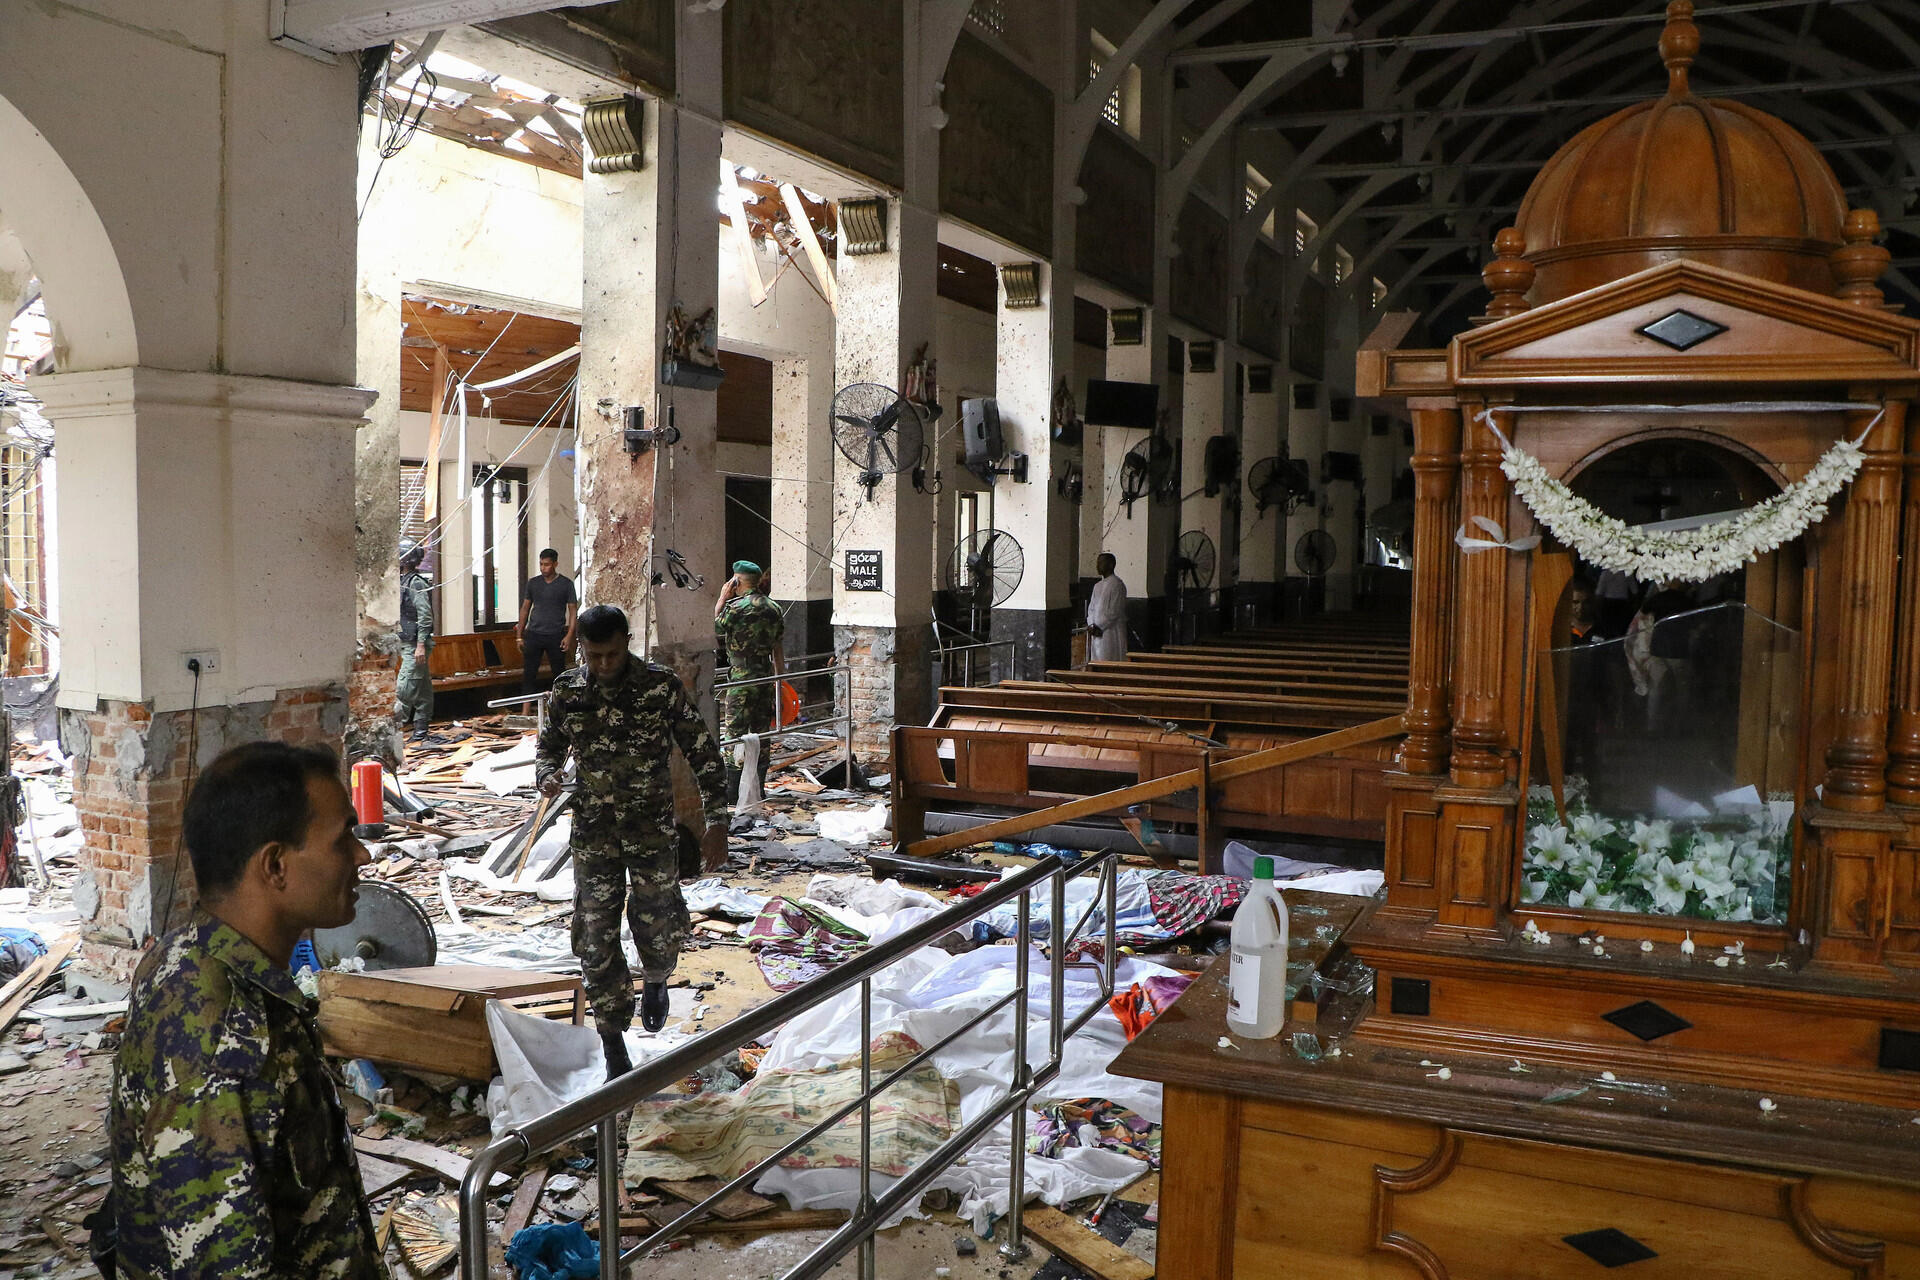 Серия взрывов произошла в храмах и пятизвёздочных отелях Шри-Ланки 21 апреля, в католическую Пасху. Фото: russian.rt.com